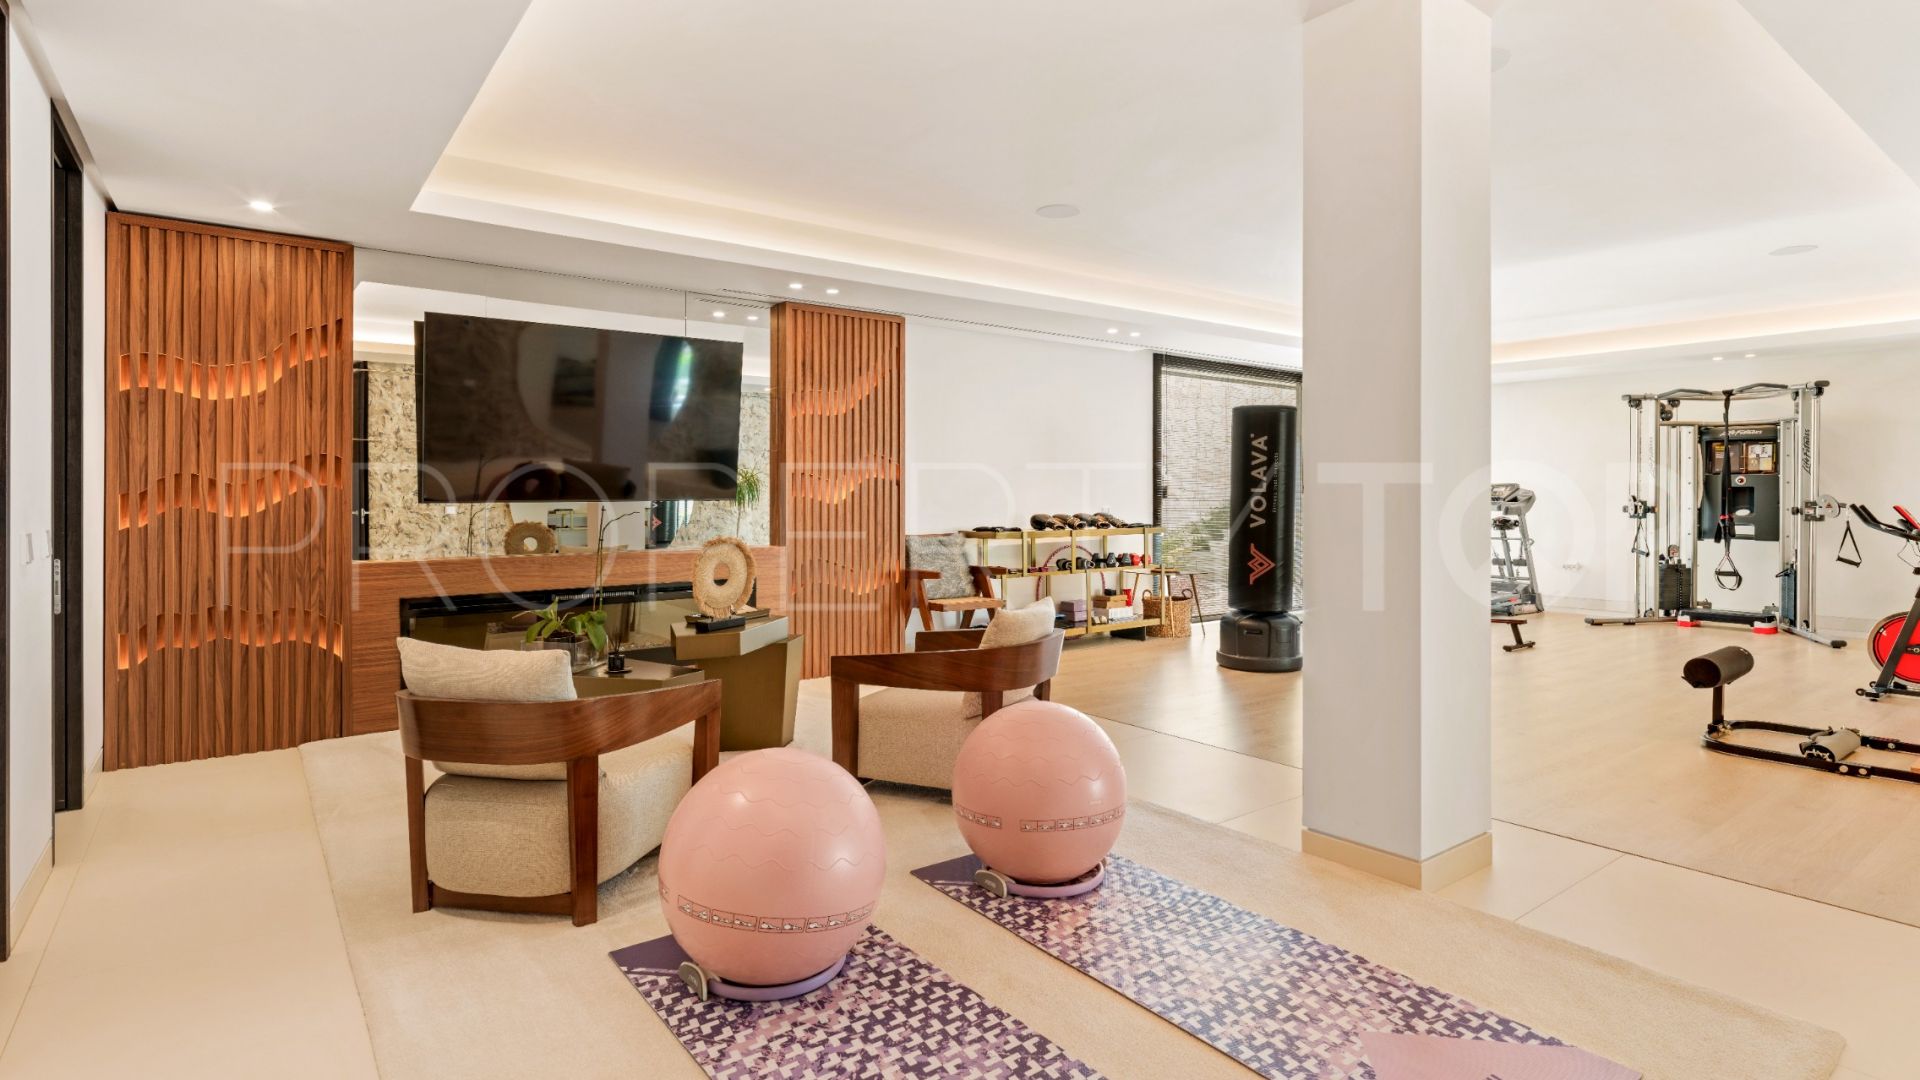 Marbella Club Golf Resort, villa de 8 dormitorios en venta